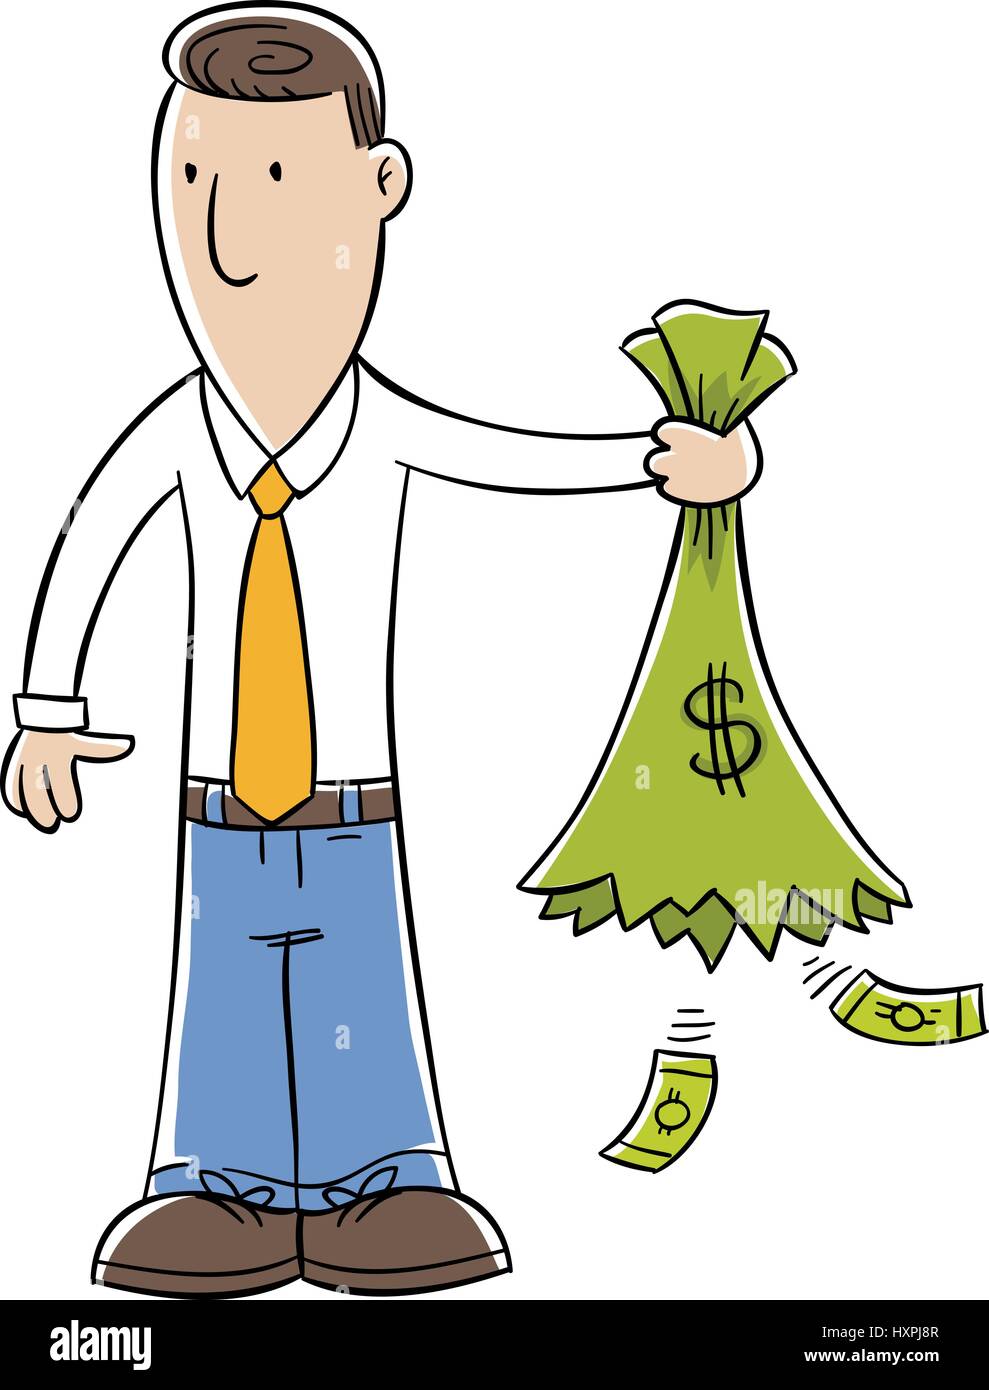 Homme d'une caricature est titulaire d'un sac d'argent qui a ouvert et vidé  Image Vectorielle Stock - Alamy